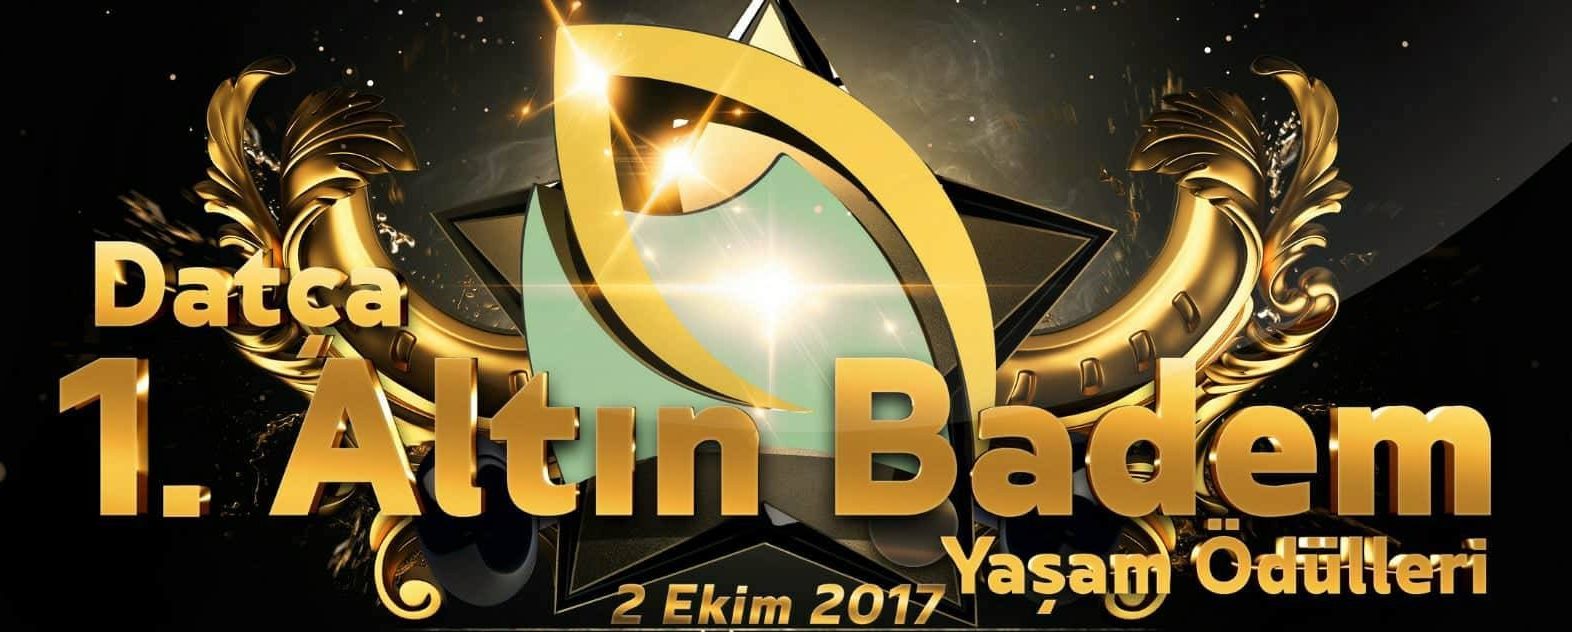 Церемония вручения премии “Золотой миндаль” состоится в Турции